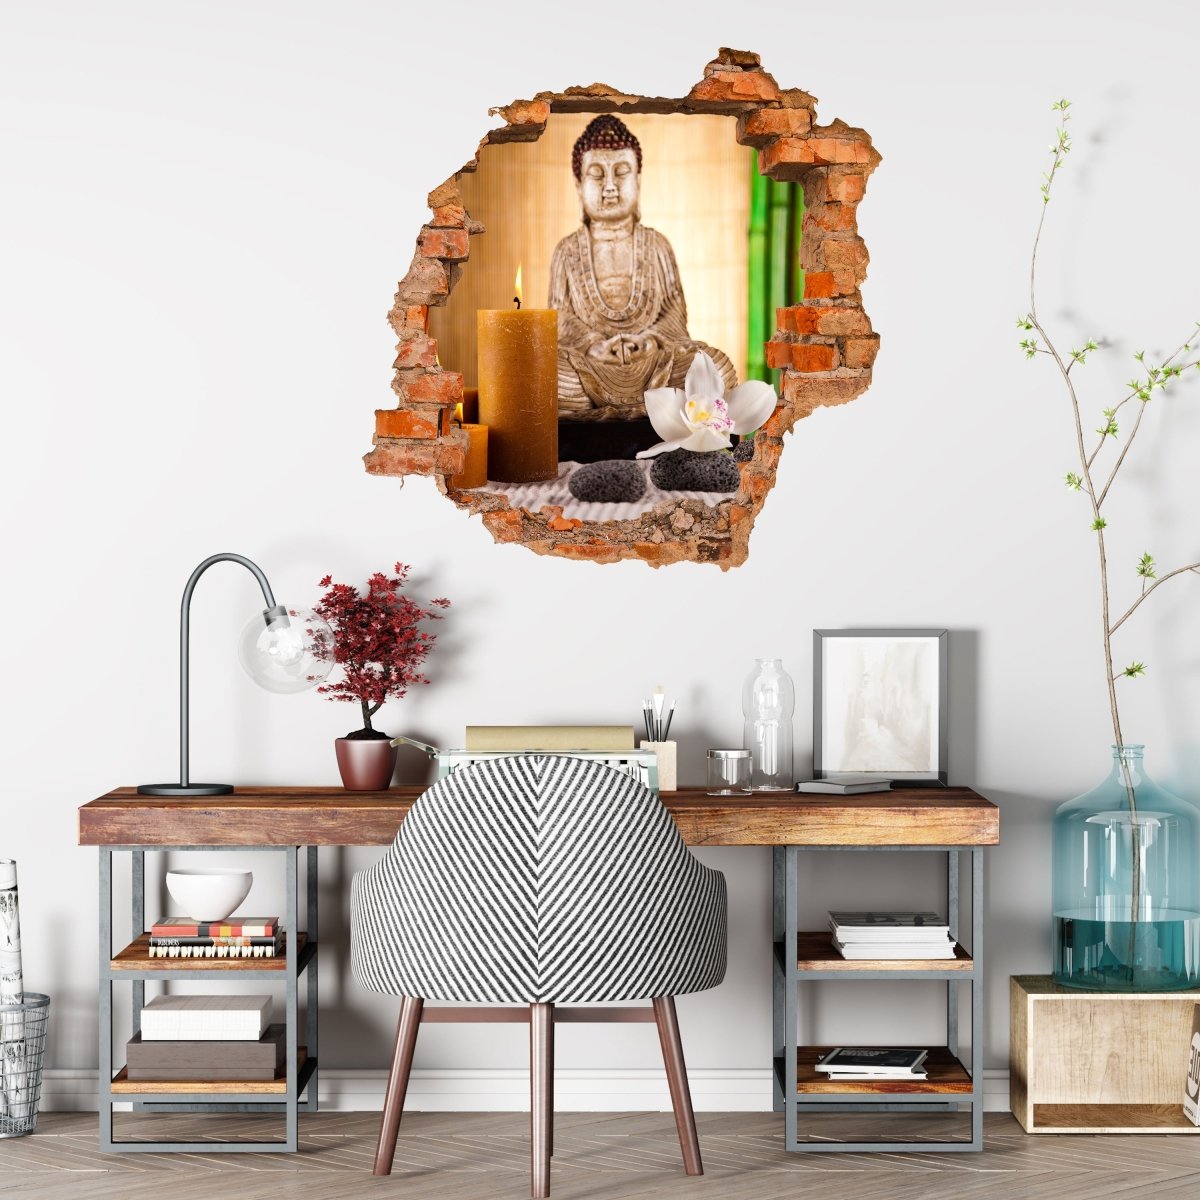 Autocollant mural 3D Bouddha avec bougie - Couleurs vives - Sticker mural M0970